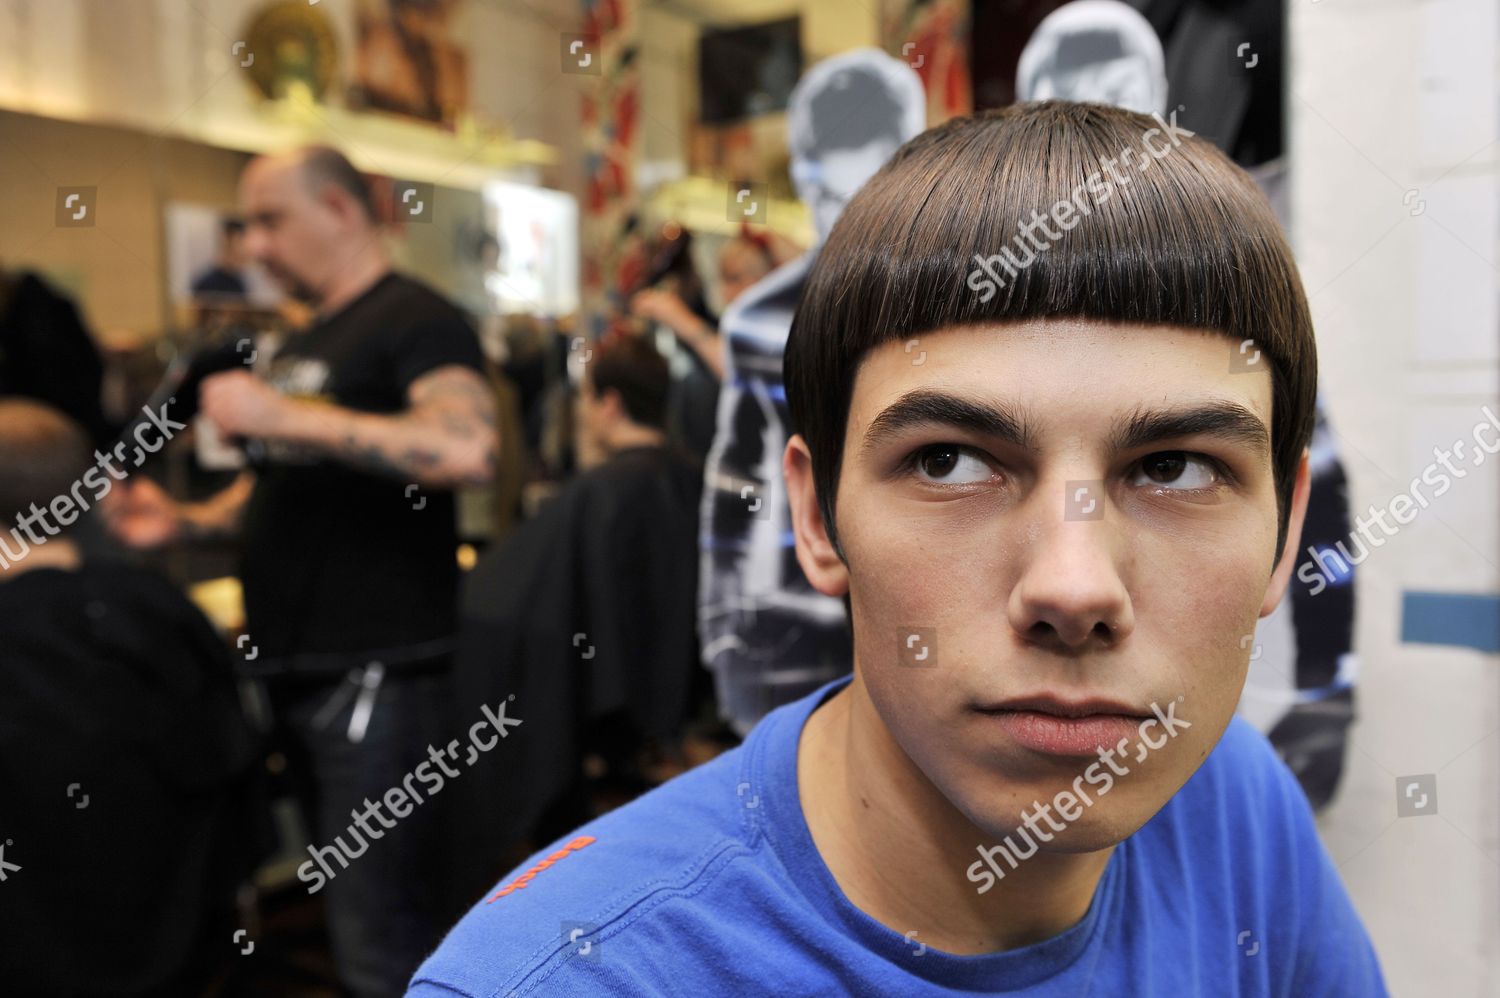 Man Star Trek Mr Spock Style Hair Redaktionelles Stockfoto